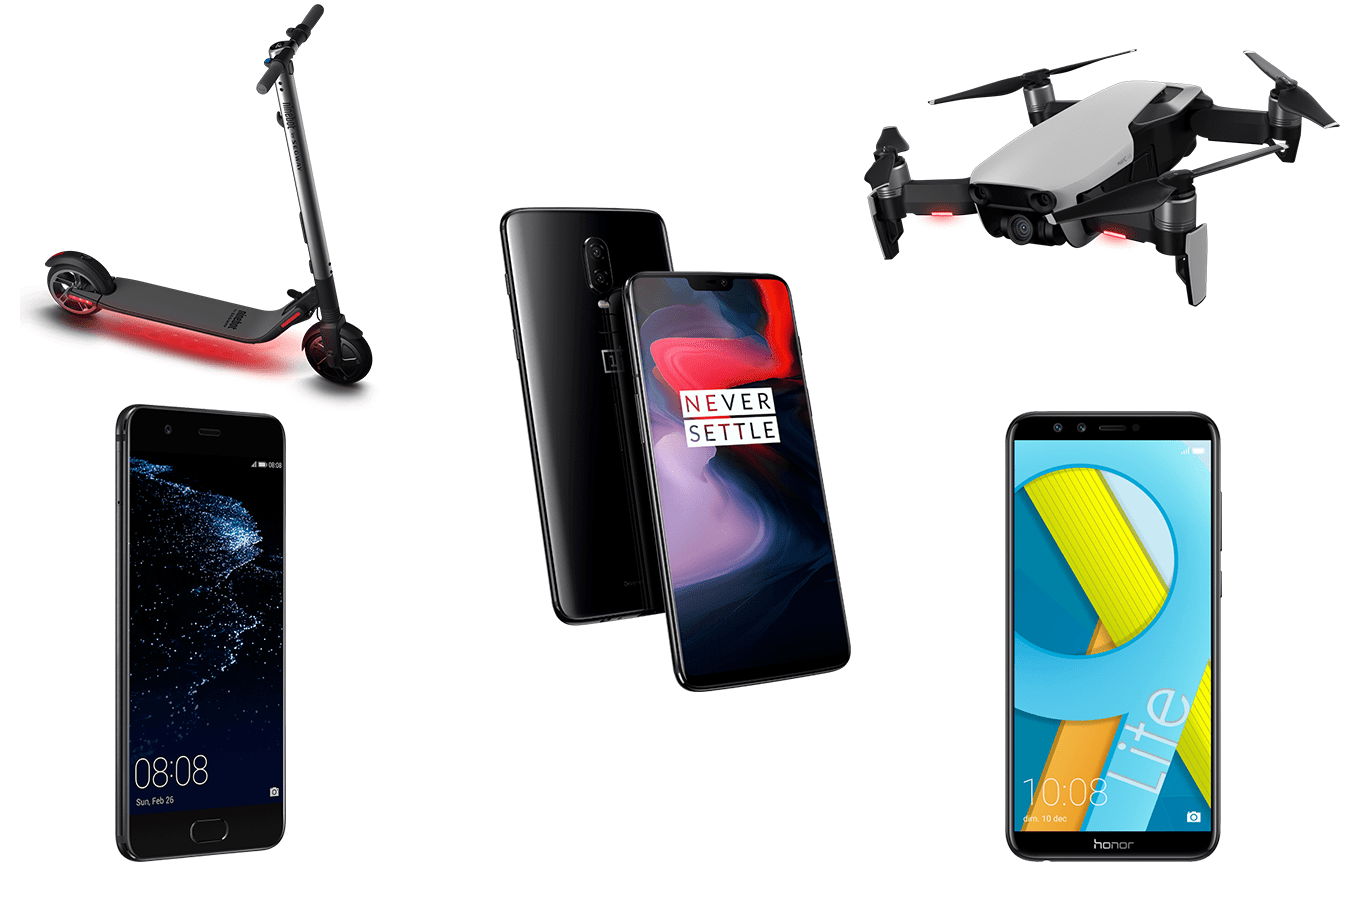 Huawei, Xiaomi, Honor, OnePlus, DJI : GearBest casse ses prix sur de nombreuses références